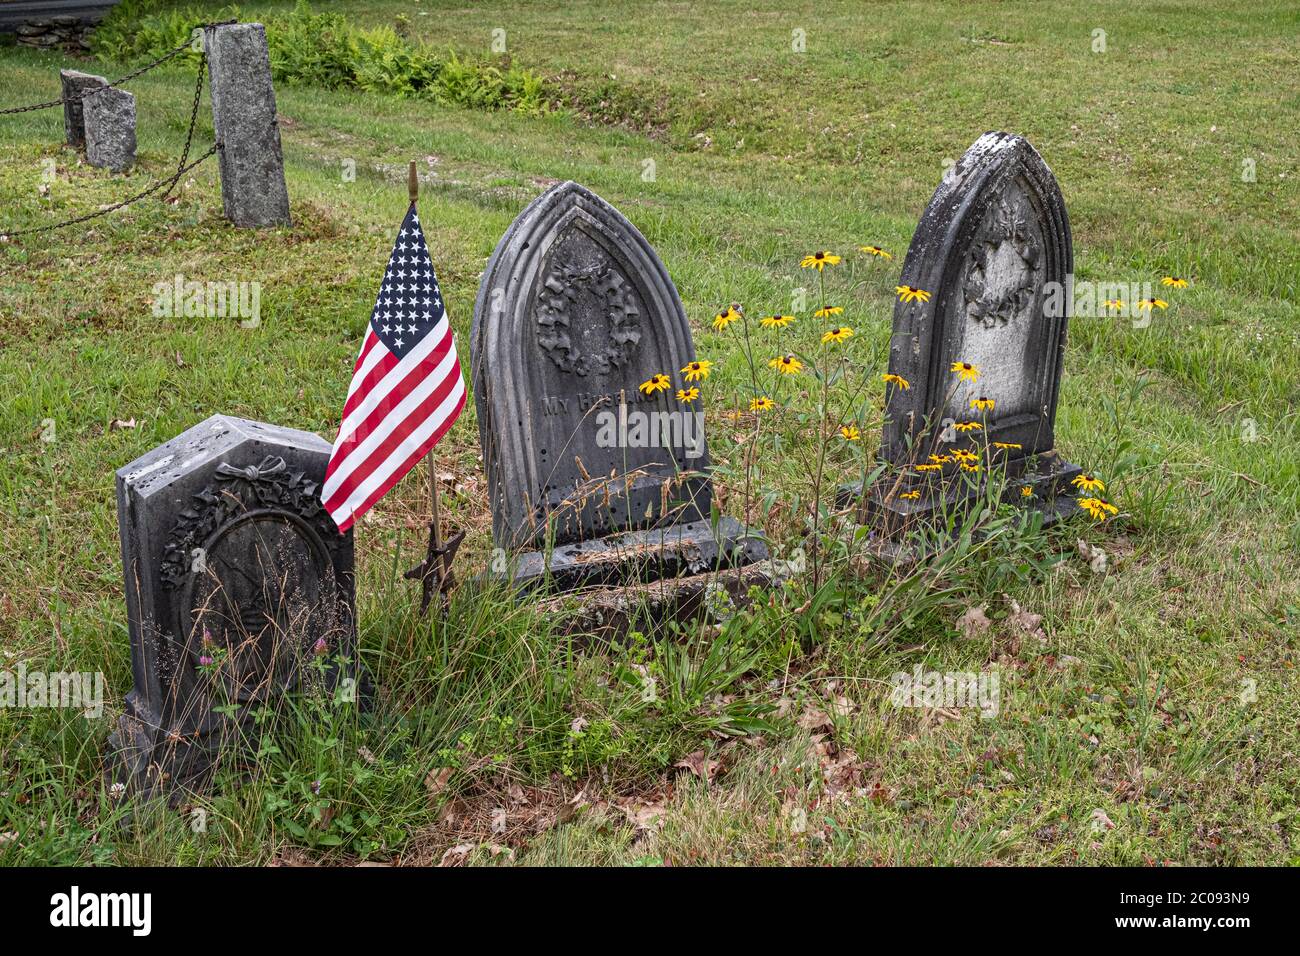 Warwick, Massachusetts cemetery Stock Photo